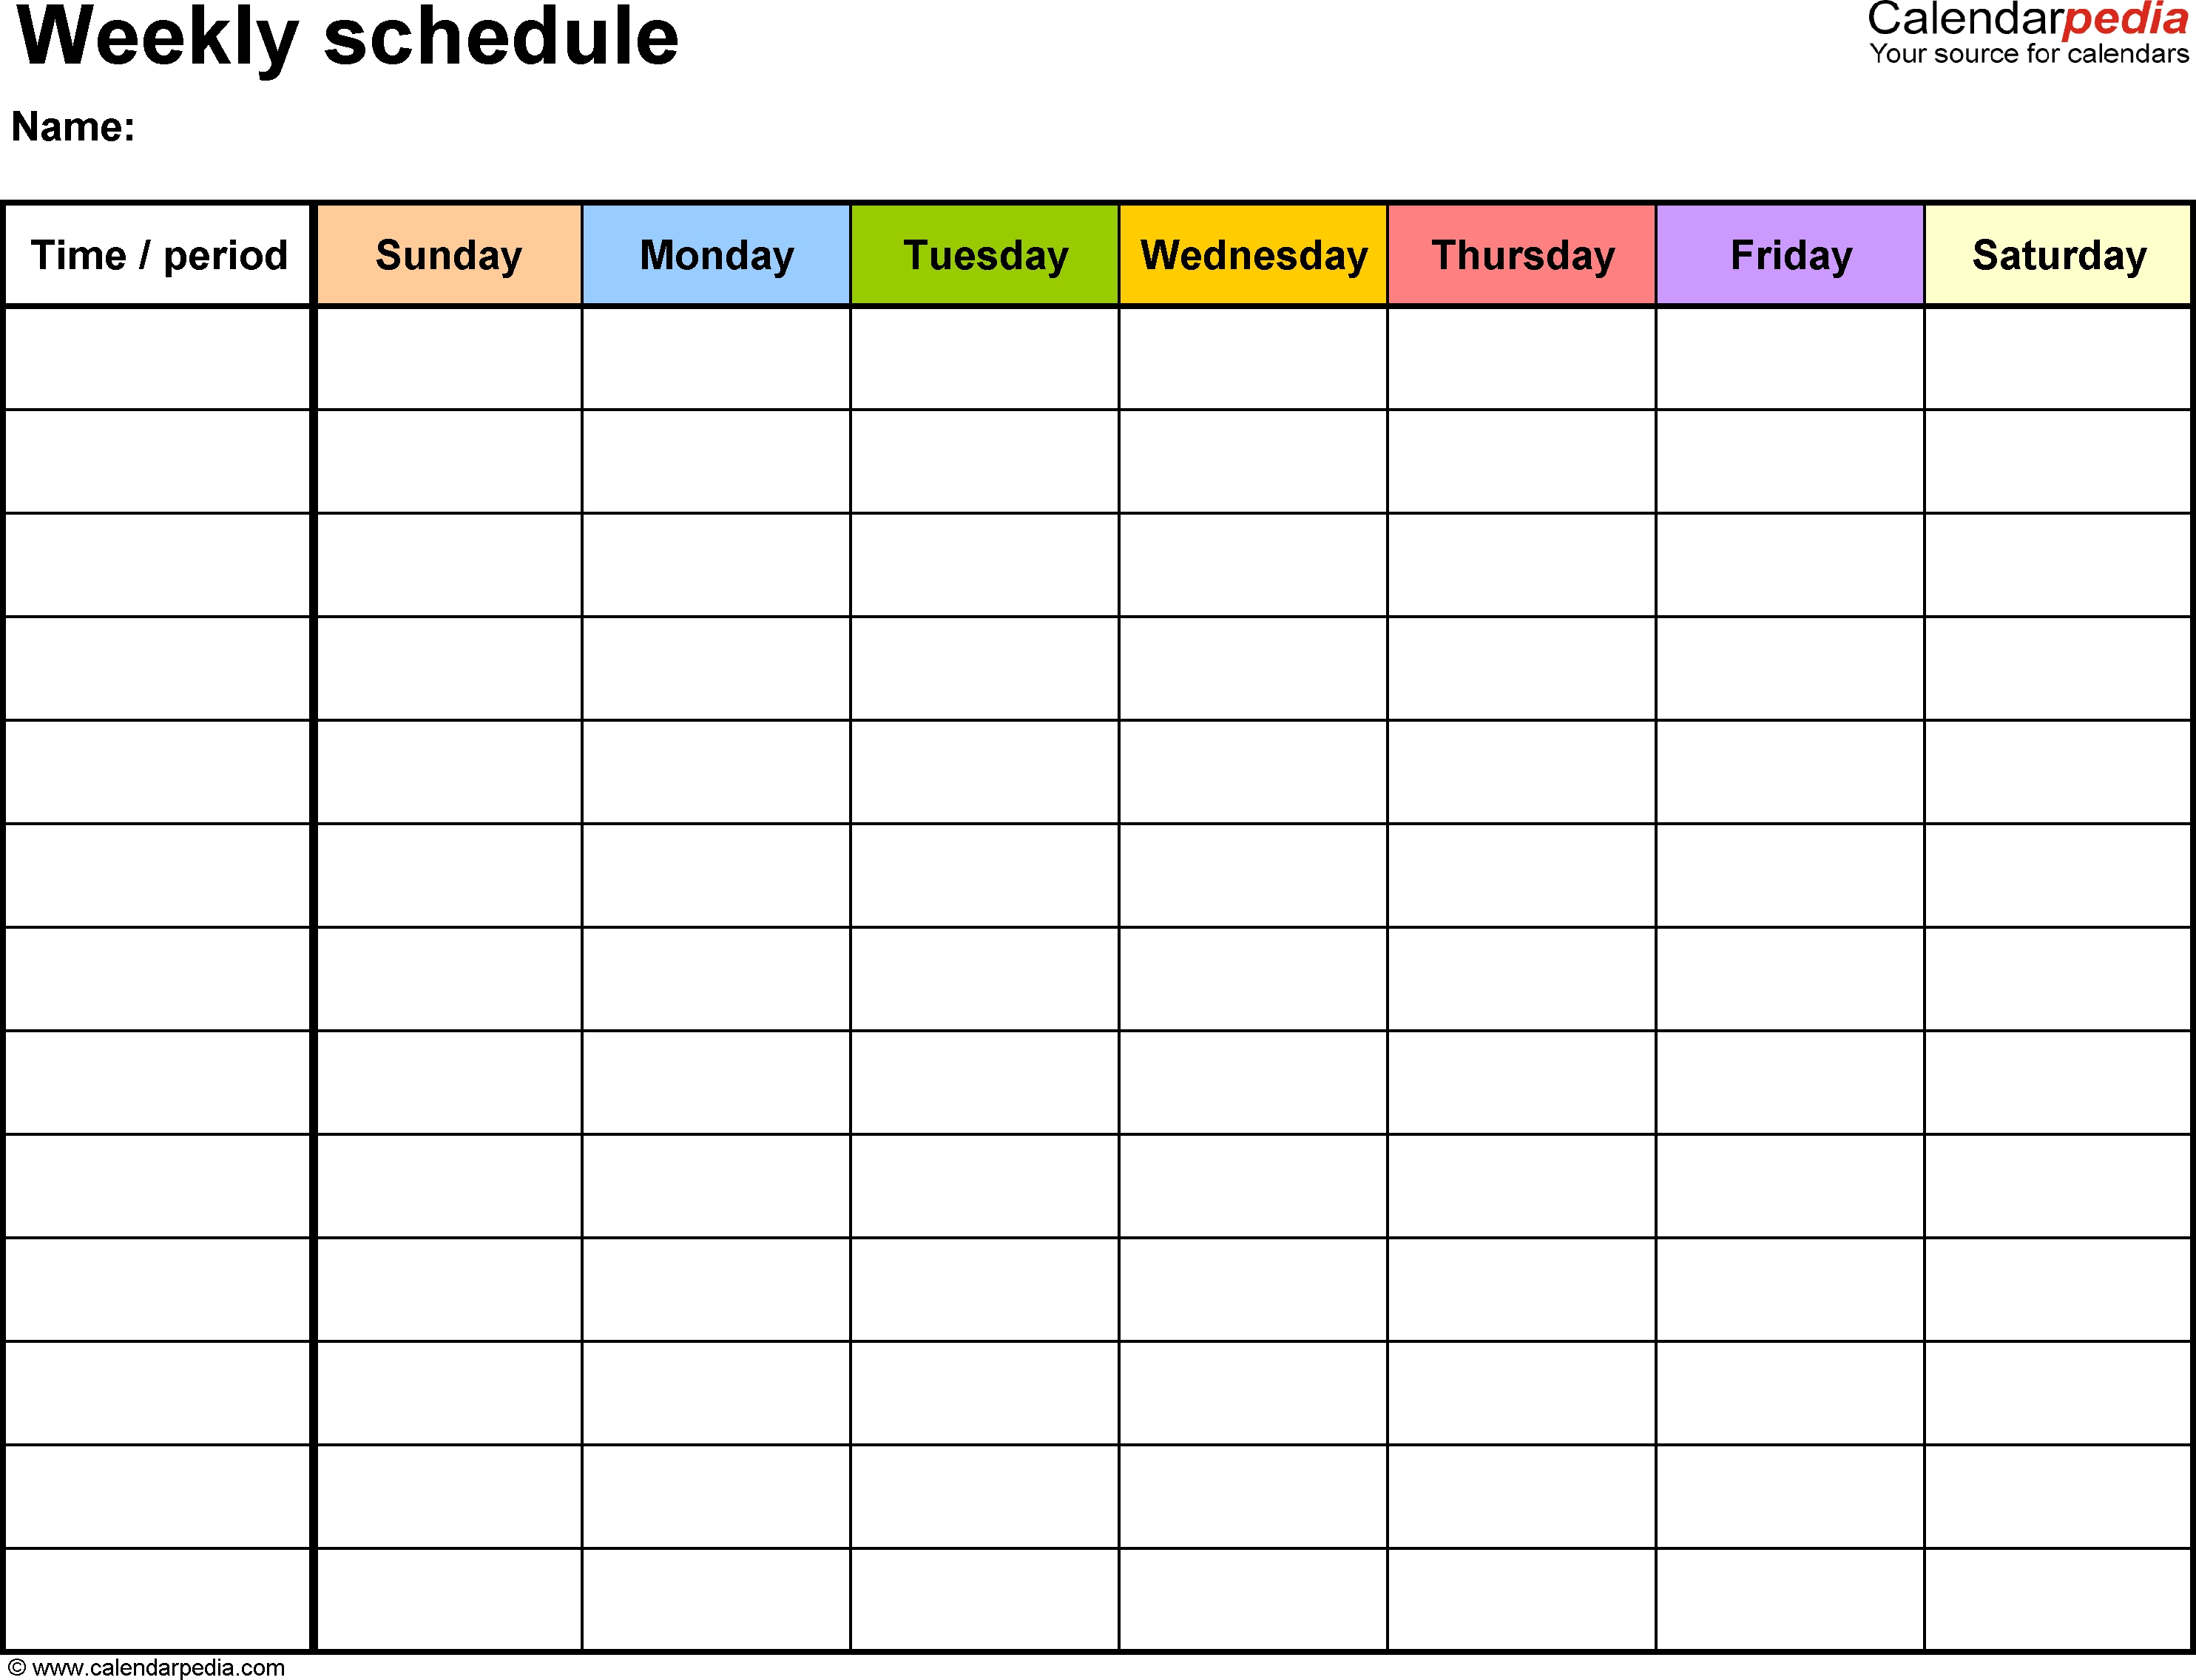 Weekly Schedule Template For Word Version 13: Landscape, 1-Blank Academic Week By Week Calendar